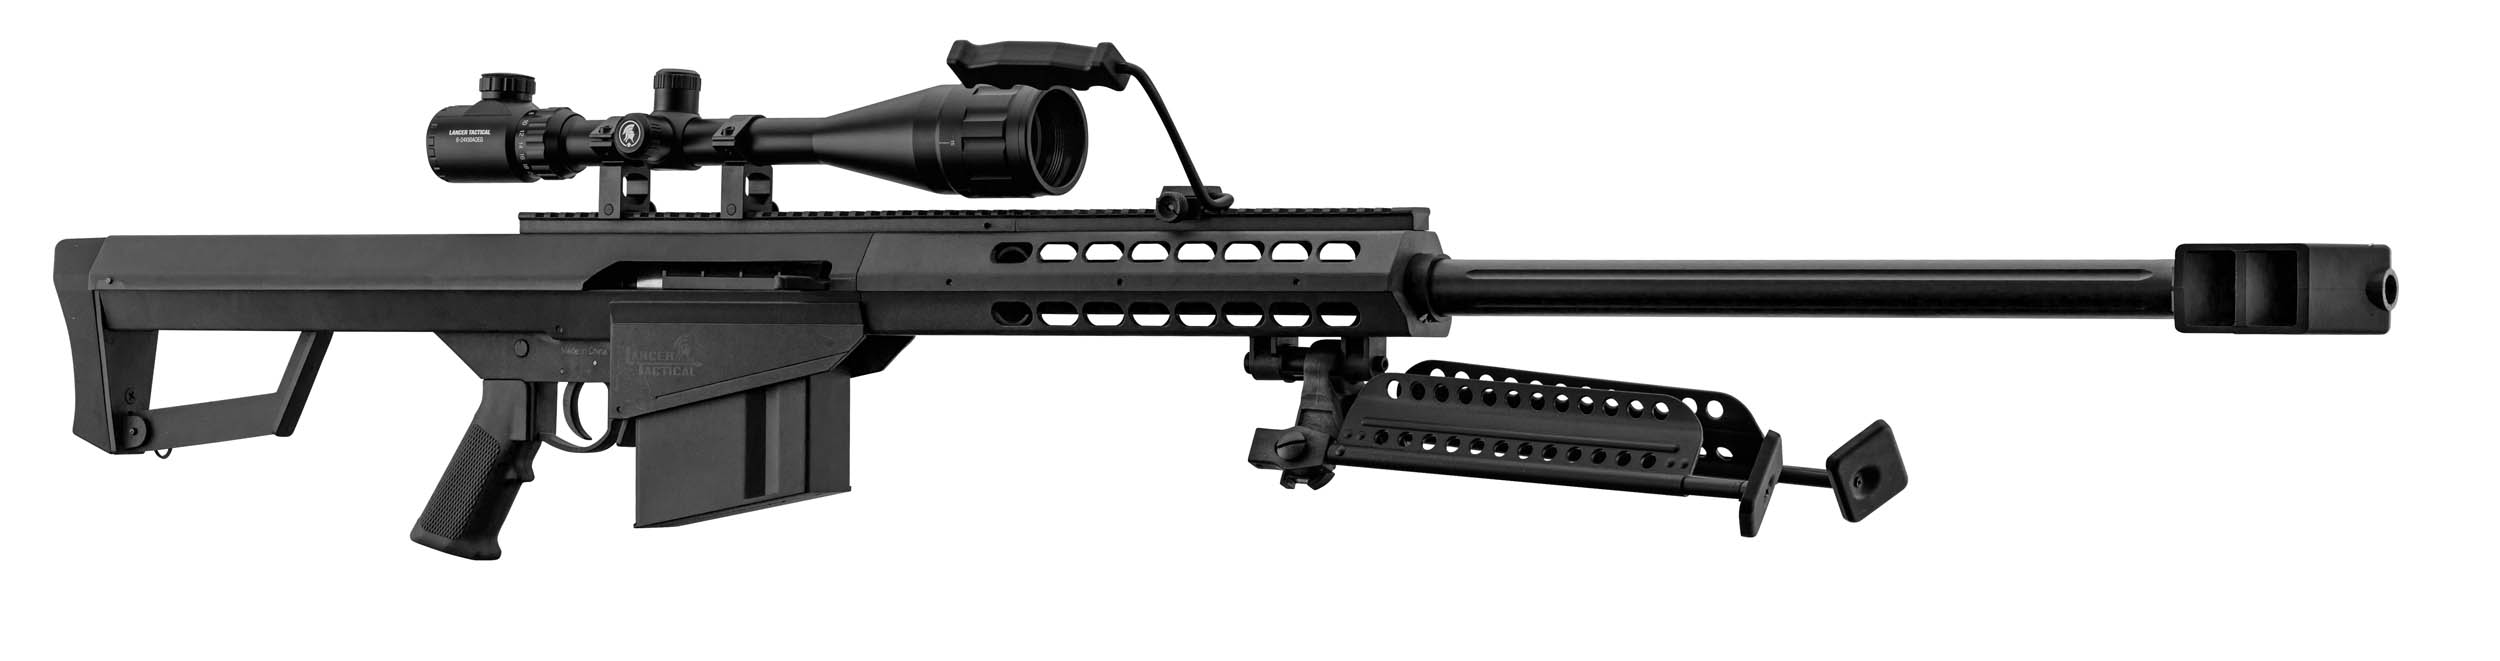 PCKLR3050-04 Pack Sniper LT-20 noir M82 1,5J + lunette + bi-pied + poignée - PCKLR3050